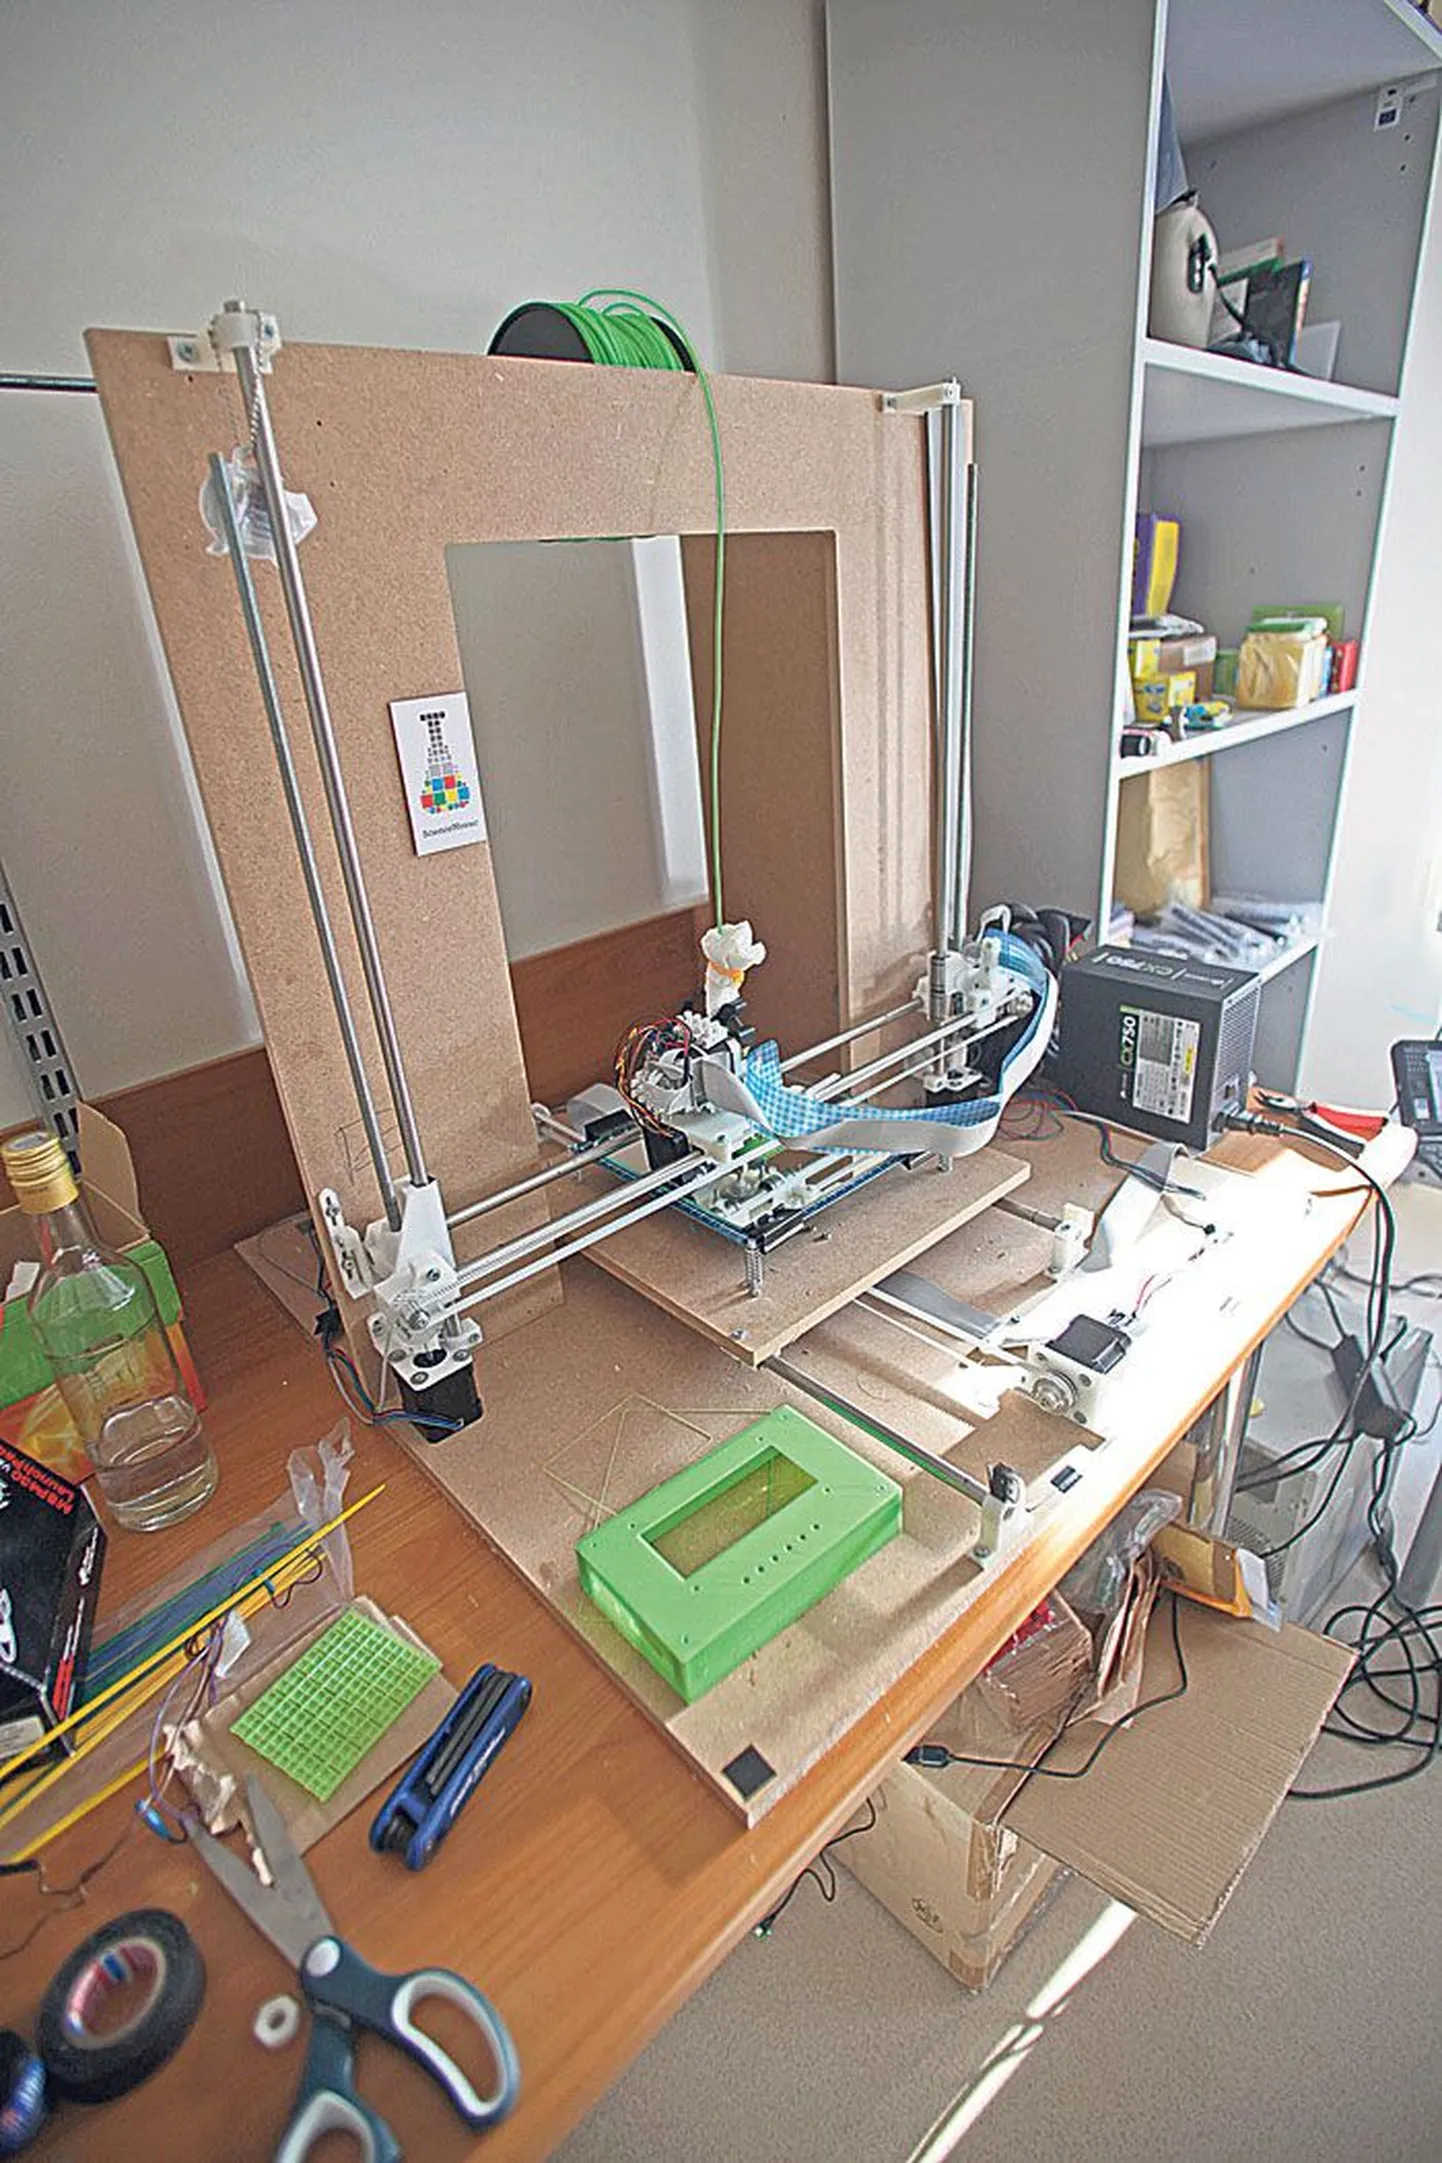 Protodevi arendatav 3D-printer, mis suudab sulatada plastist toorikujõhvist detaile. Esiplaanil printerist välja lastud elektroonilise mõõteseadme korpus (roheline).